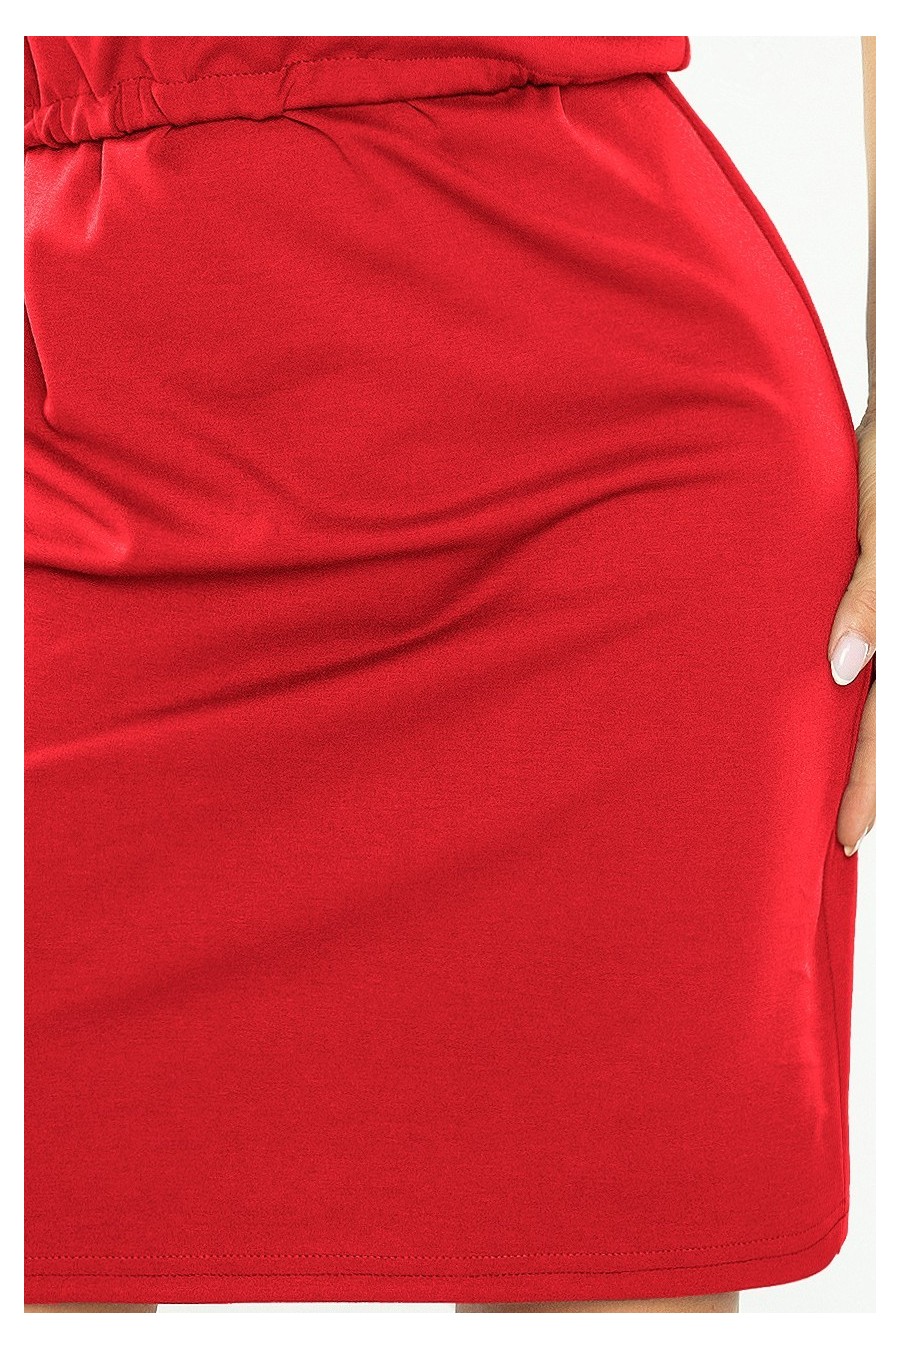 161-11 AGATA - Šaty s límcem - červená